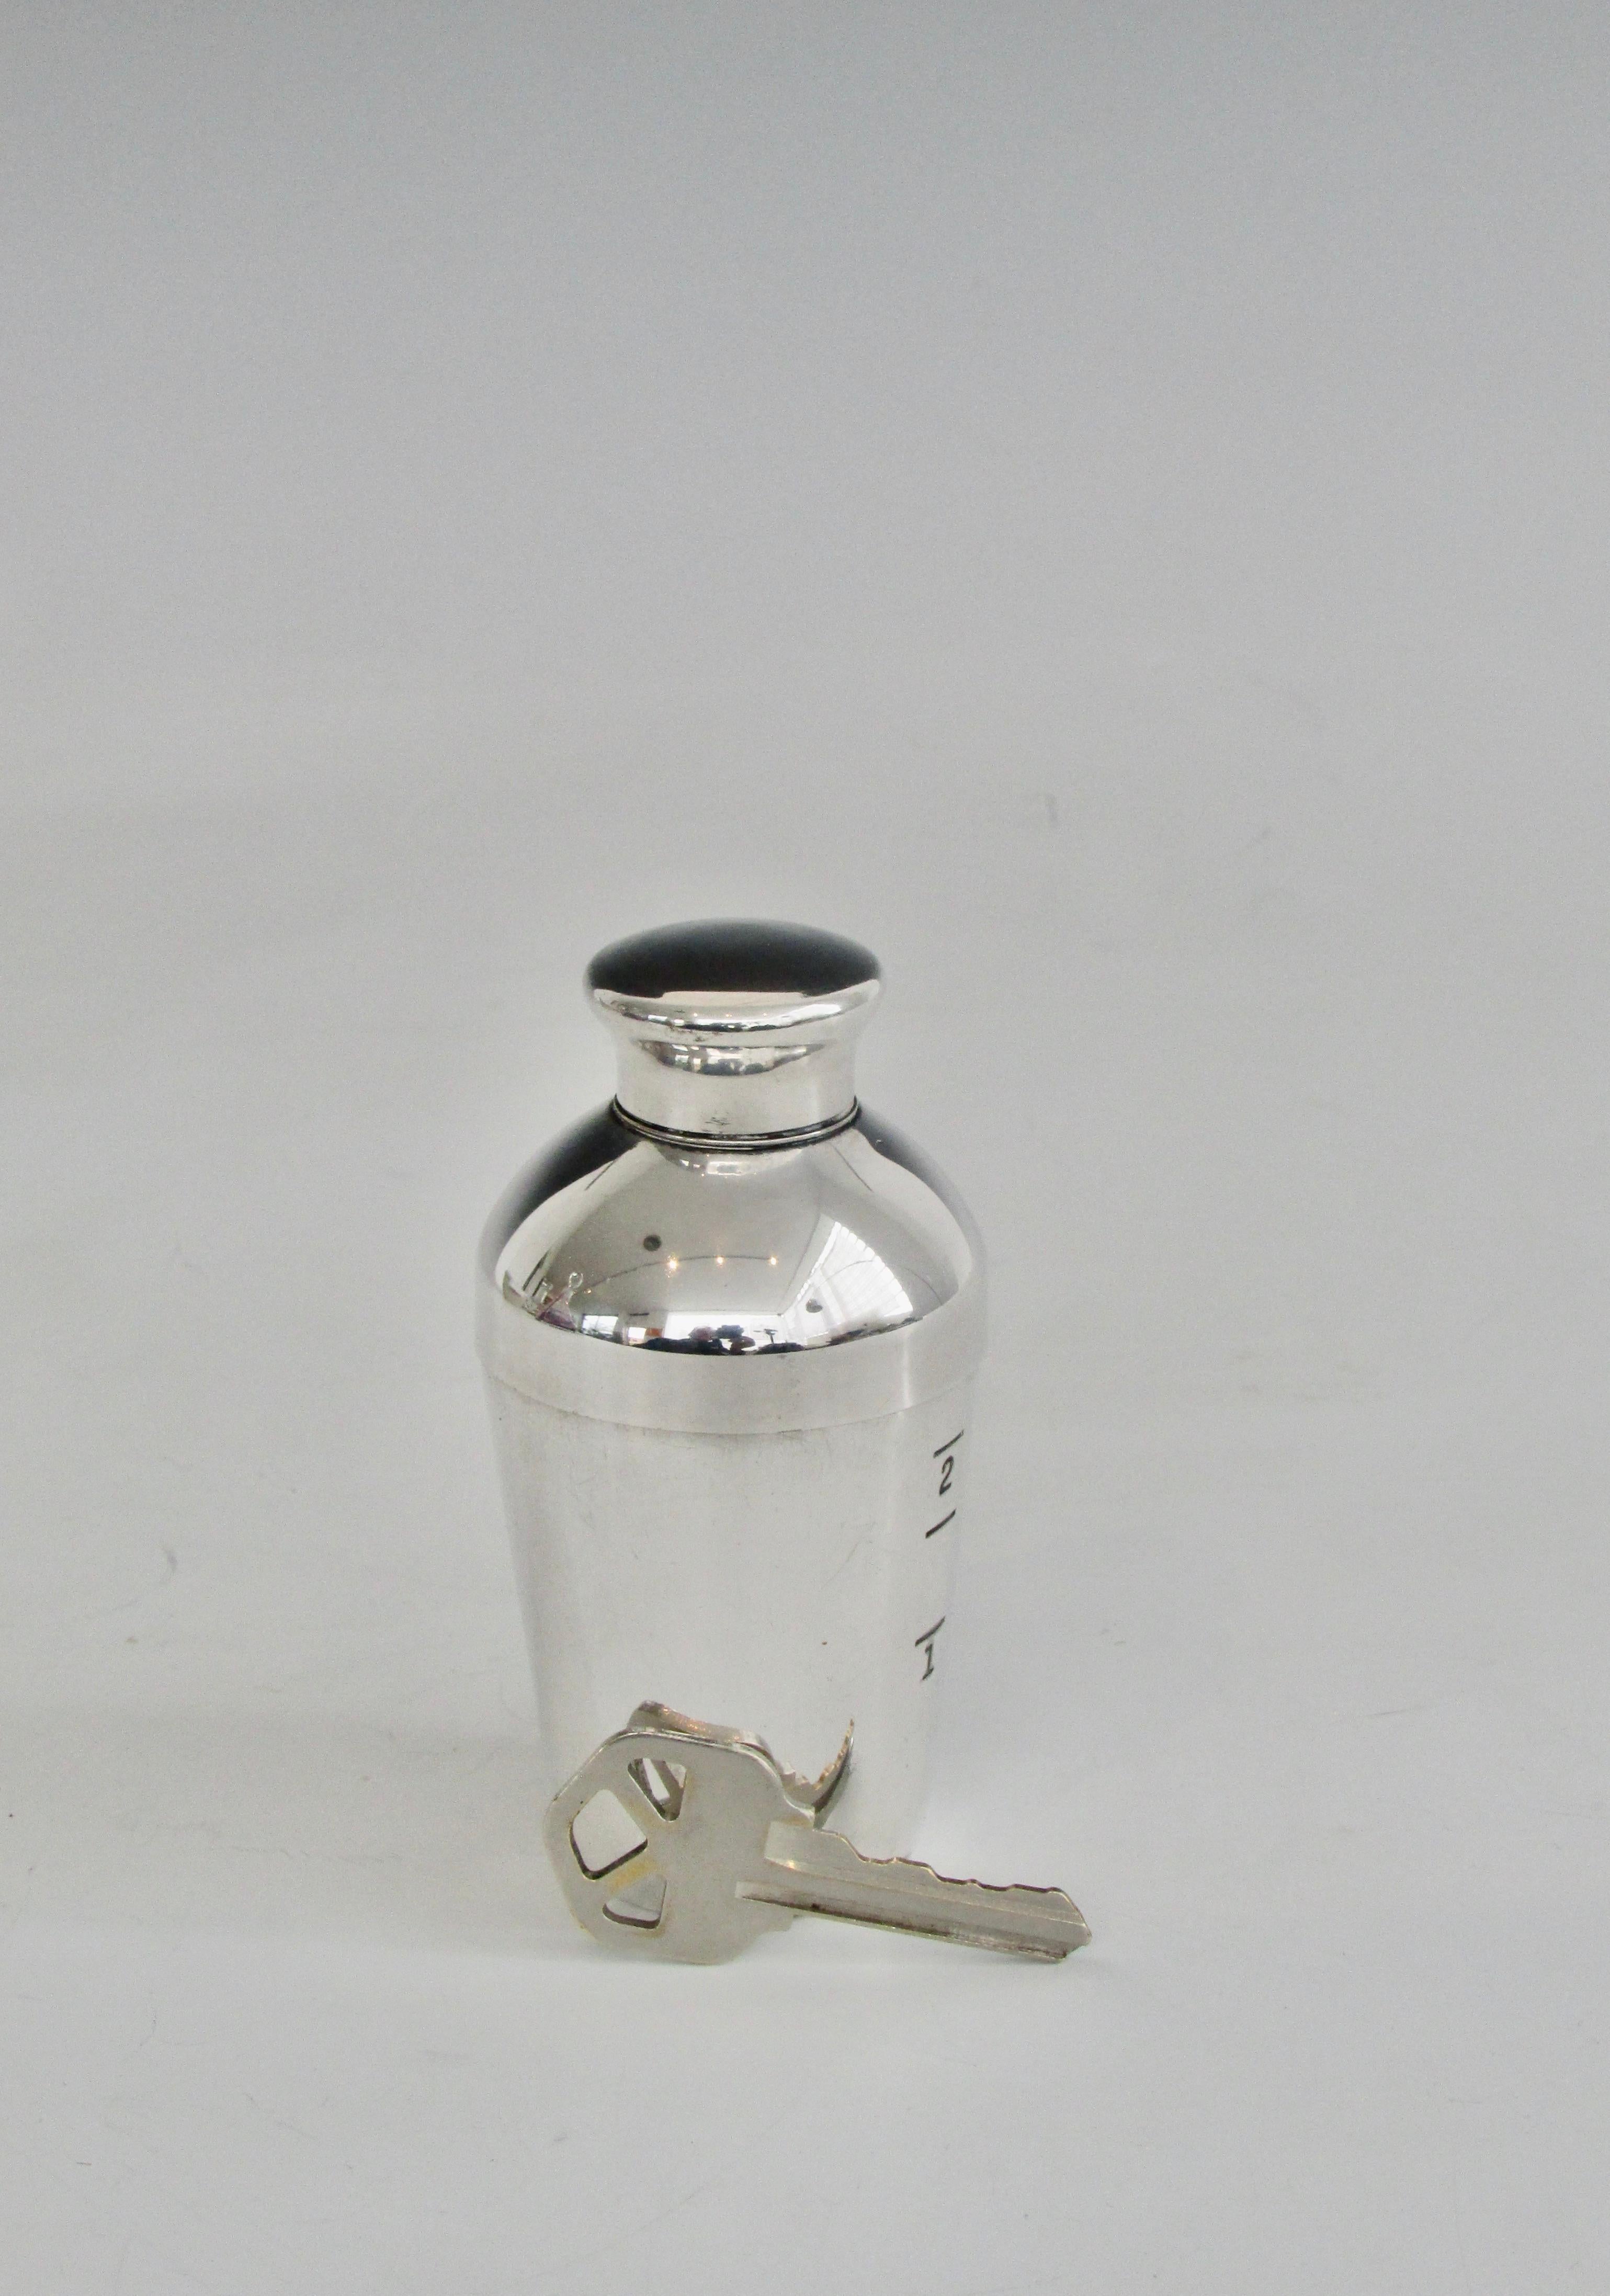 Diminutif shaker de 2 onces en métal argenté. Estampillé Napier.